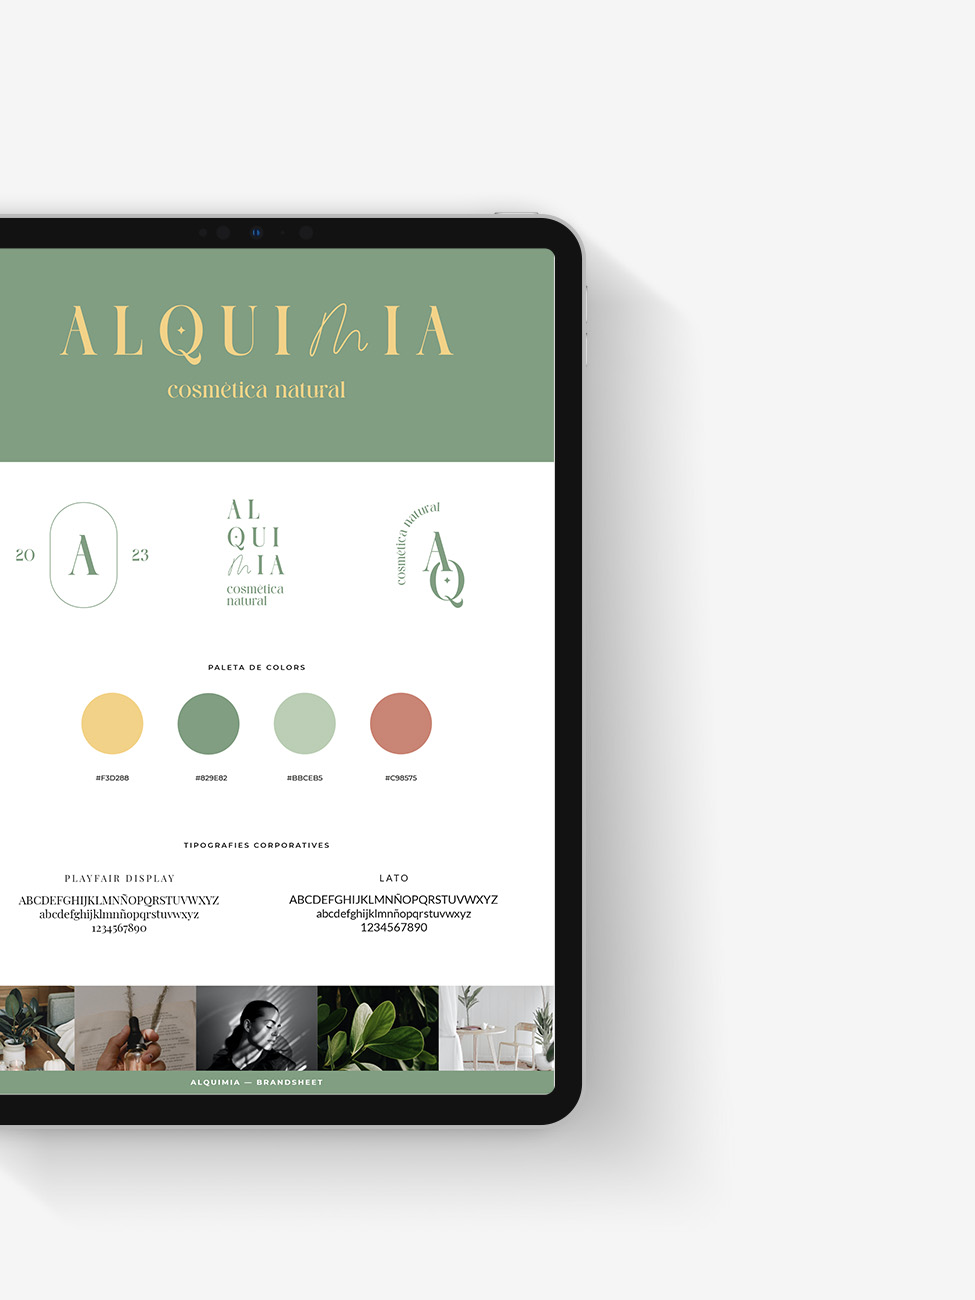 iPad amb el brandboard d'Alquimia, que conté el logo, el simbol, la paleta de colors i les tipografies corporatives